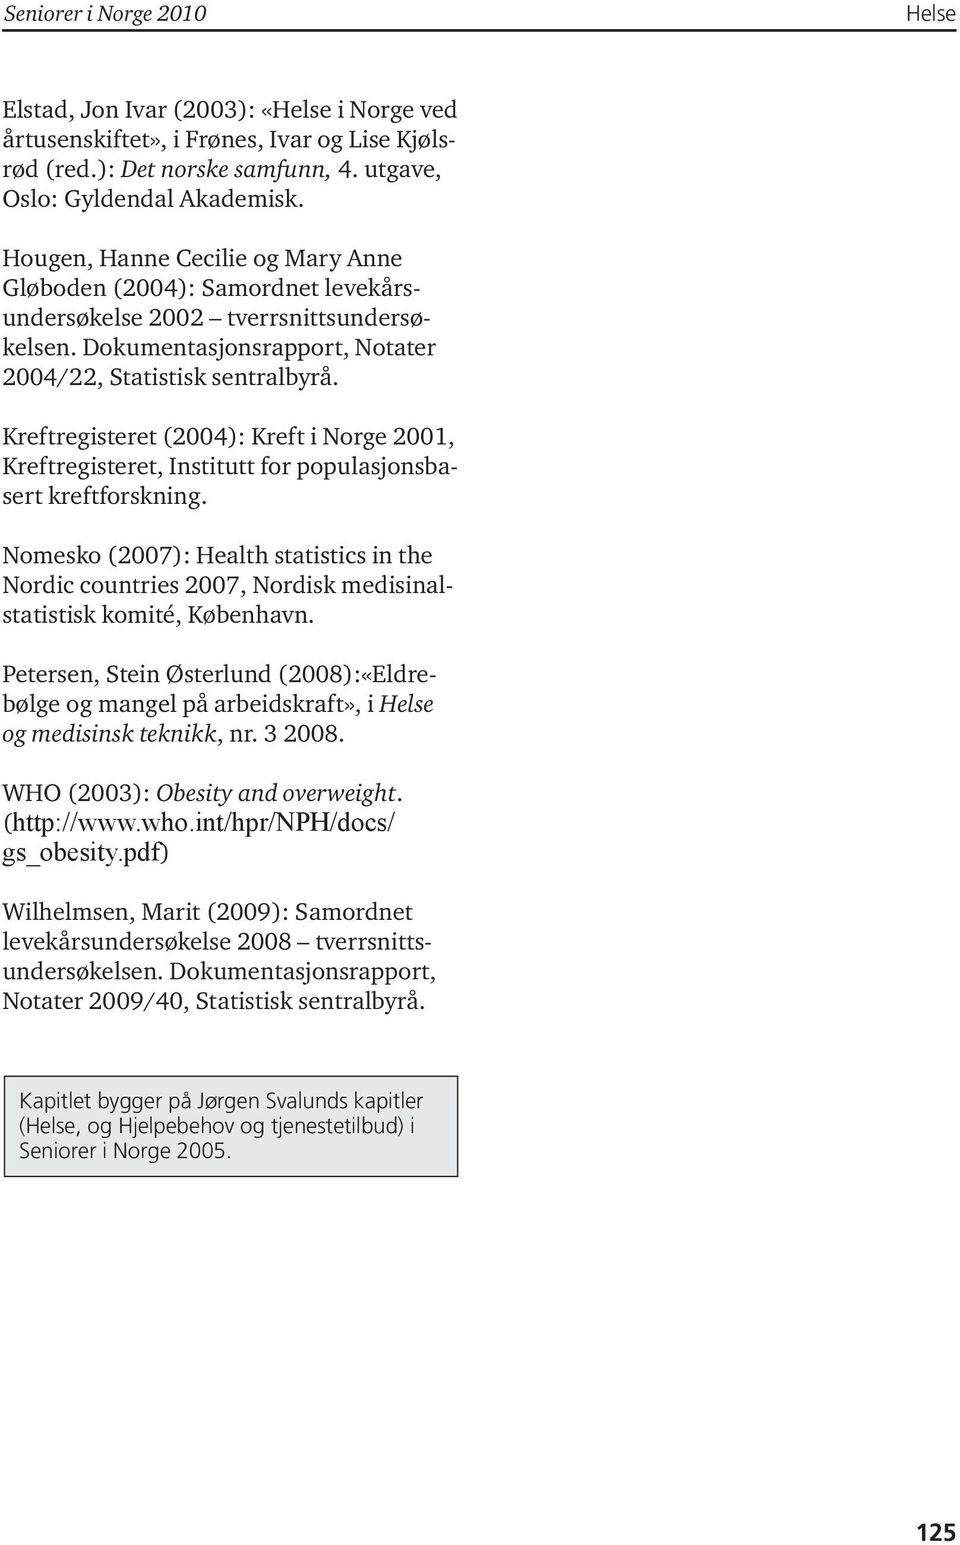 Kreftregisteret (2004): Kreft i Norge 2001, Kreftregisteret, Institutt for populasjonsbasert kreftforskning.